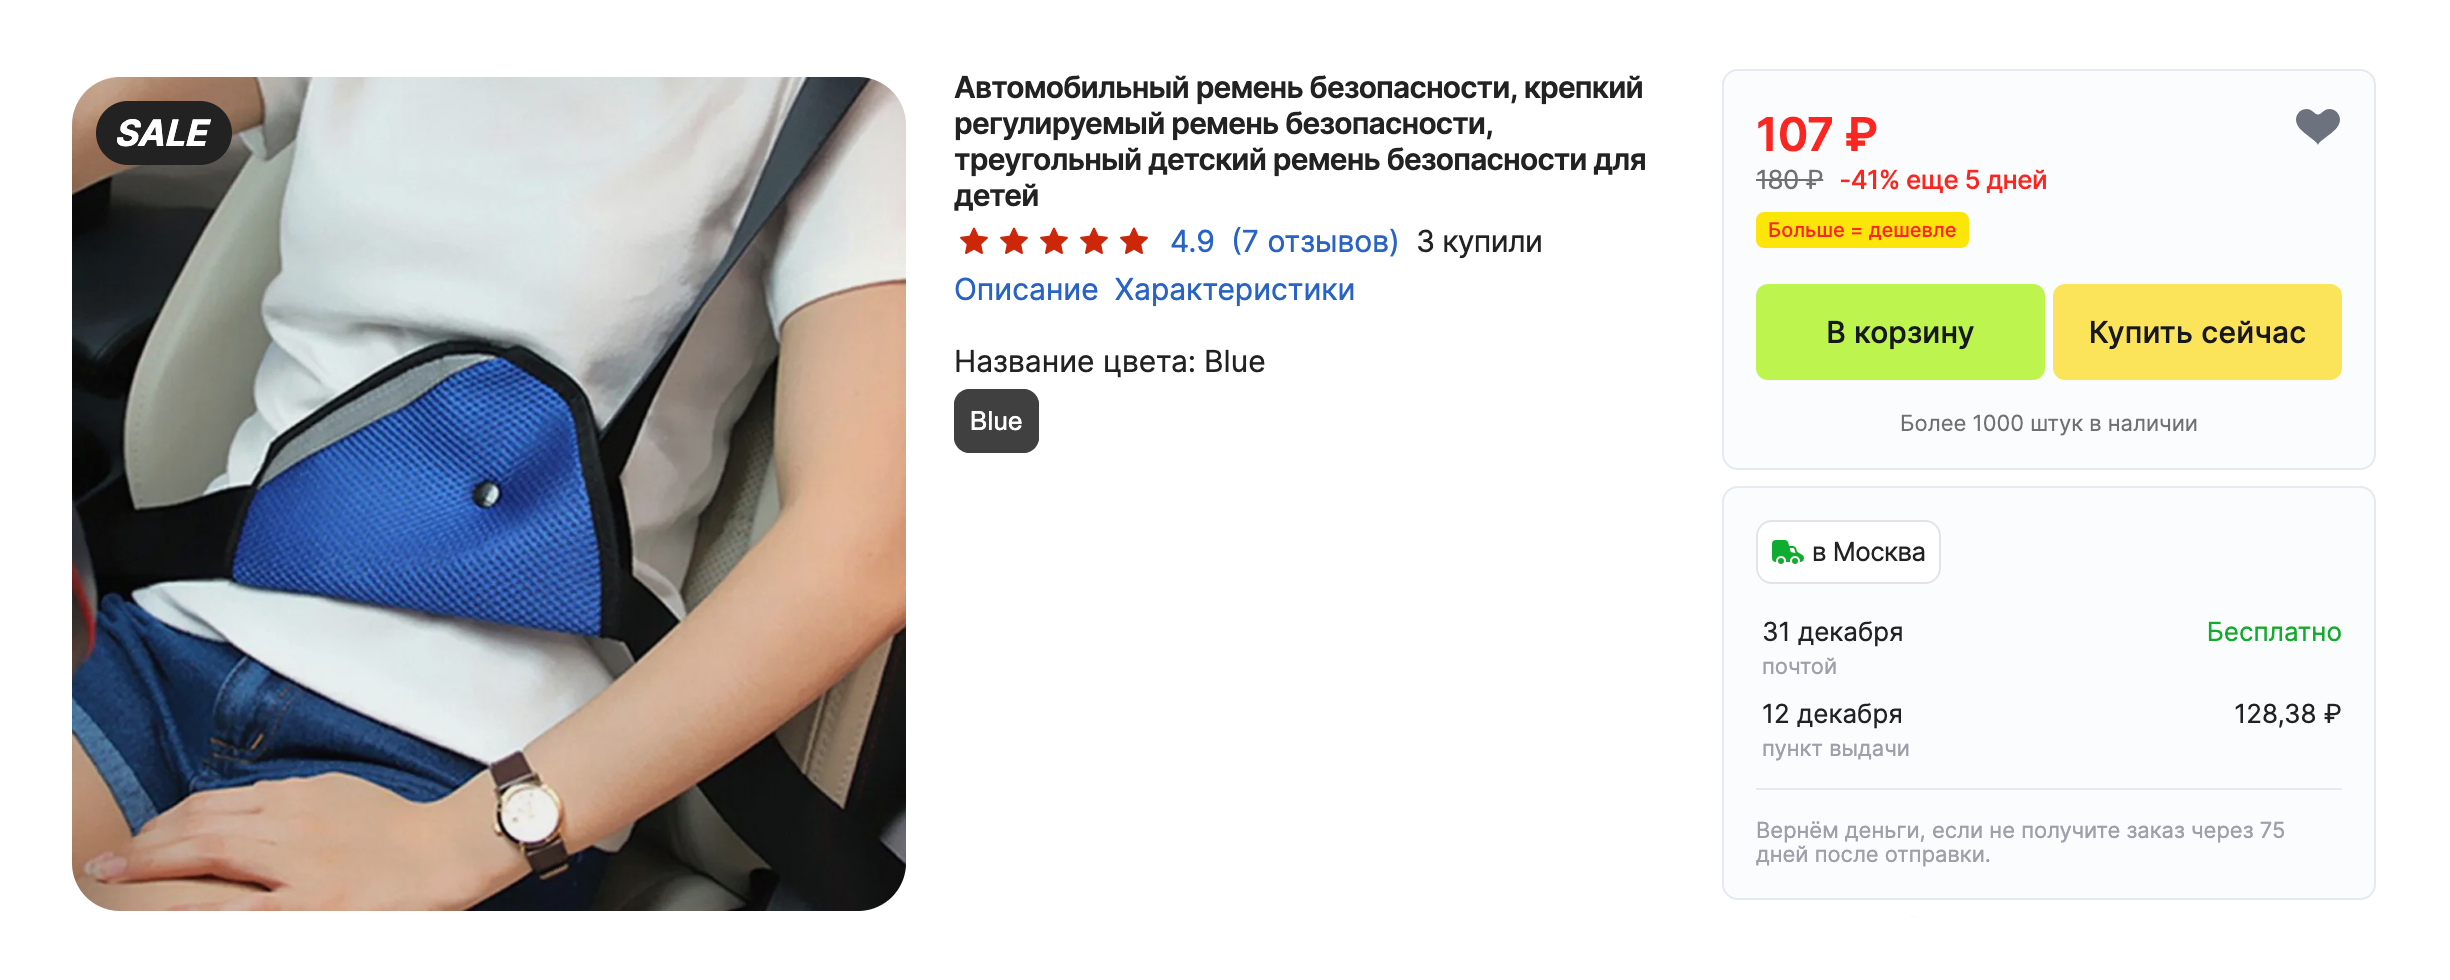 На «Алиэкспрессе» цены на детские адаптеры начинаются от 100 ₽. Но покупать их не стоит: они не обеспечивают безопасность ребенка. Источник: aliexpress.ru